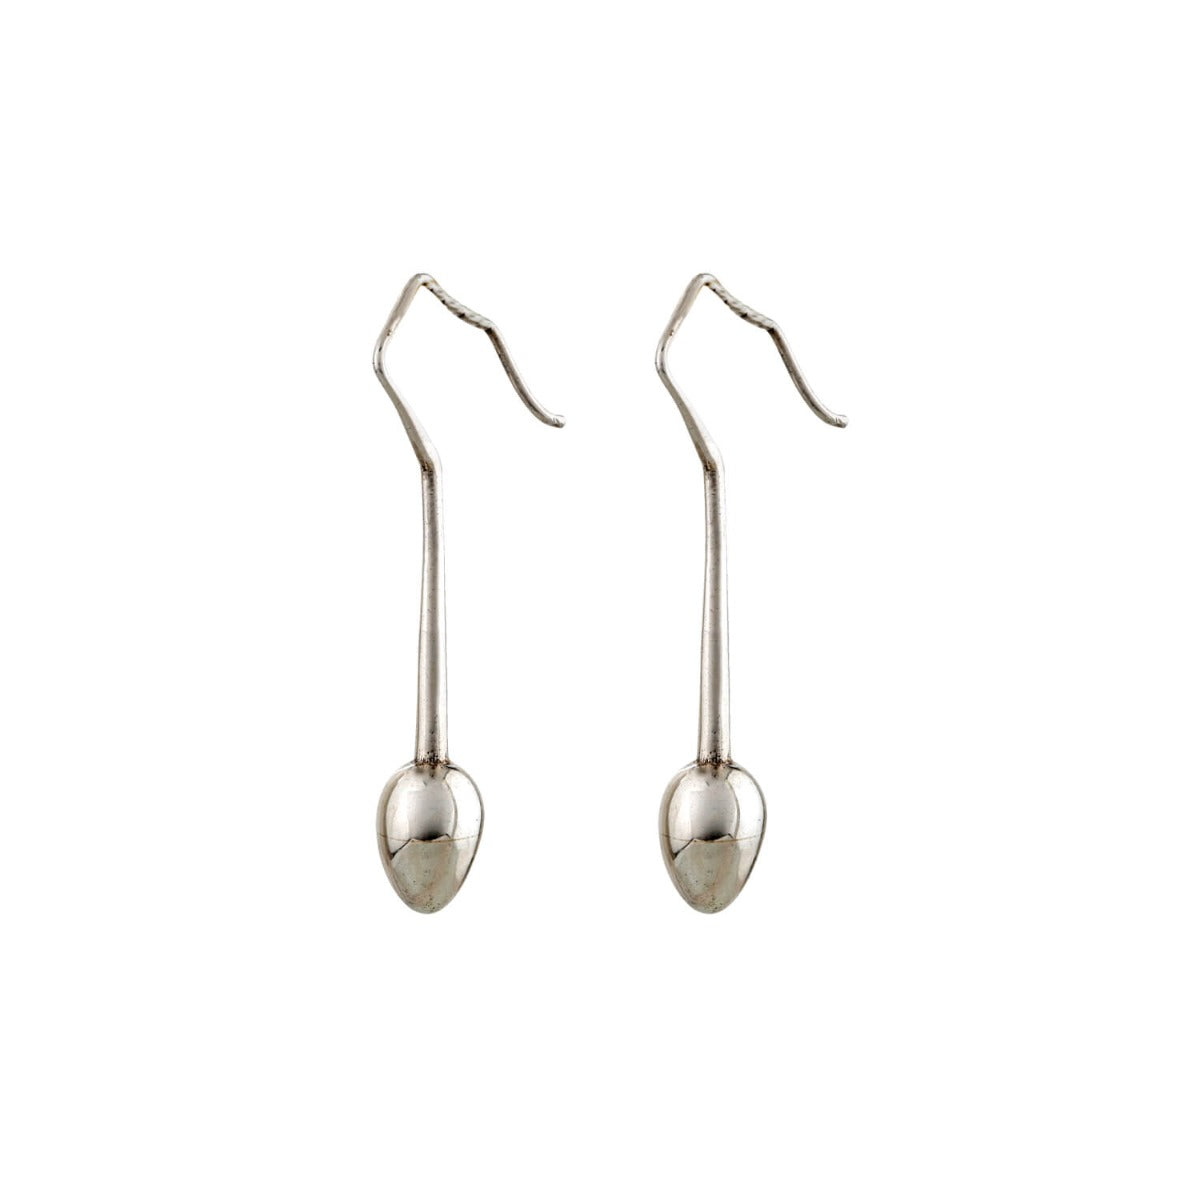 Sterling silver earrings. jewellery